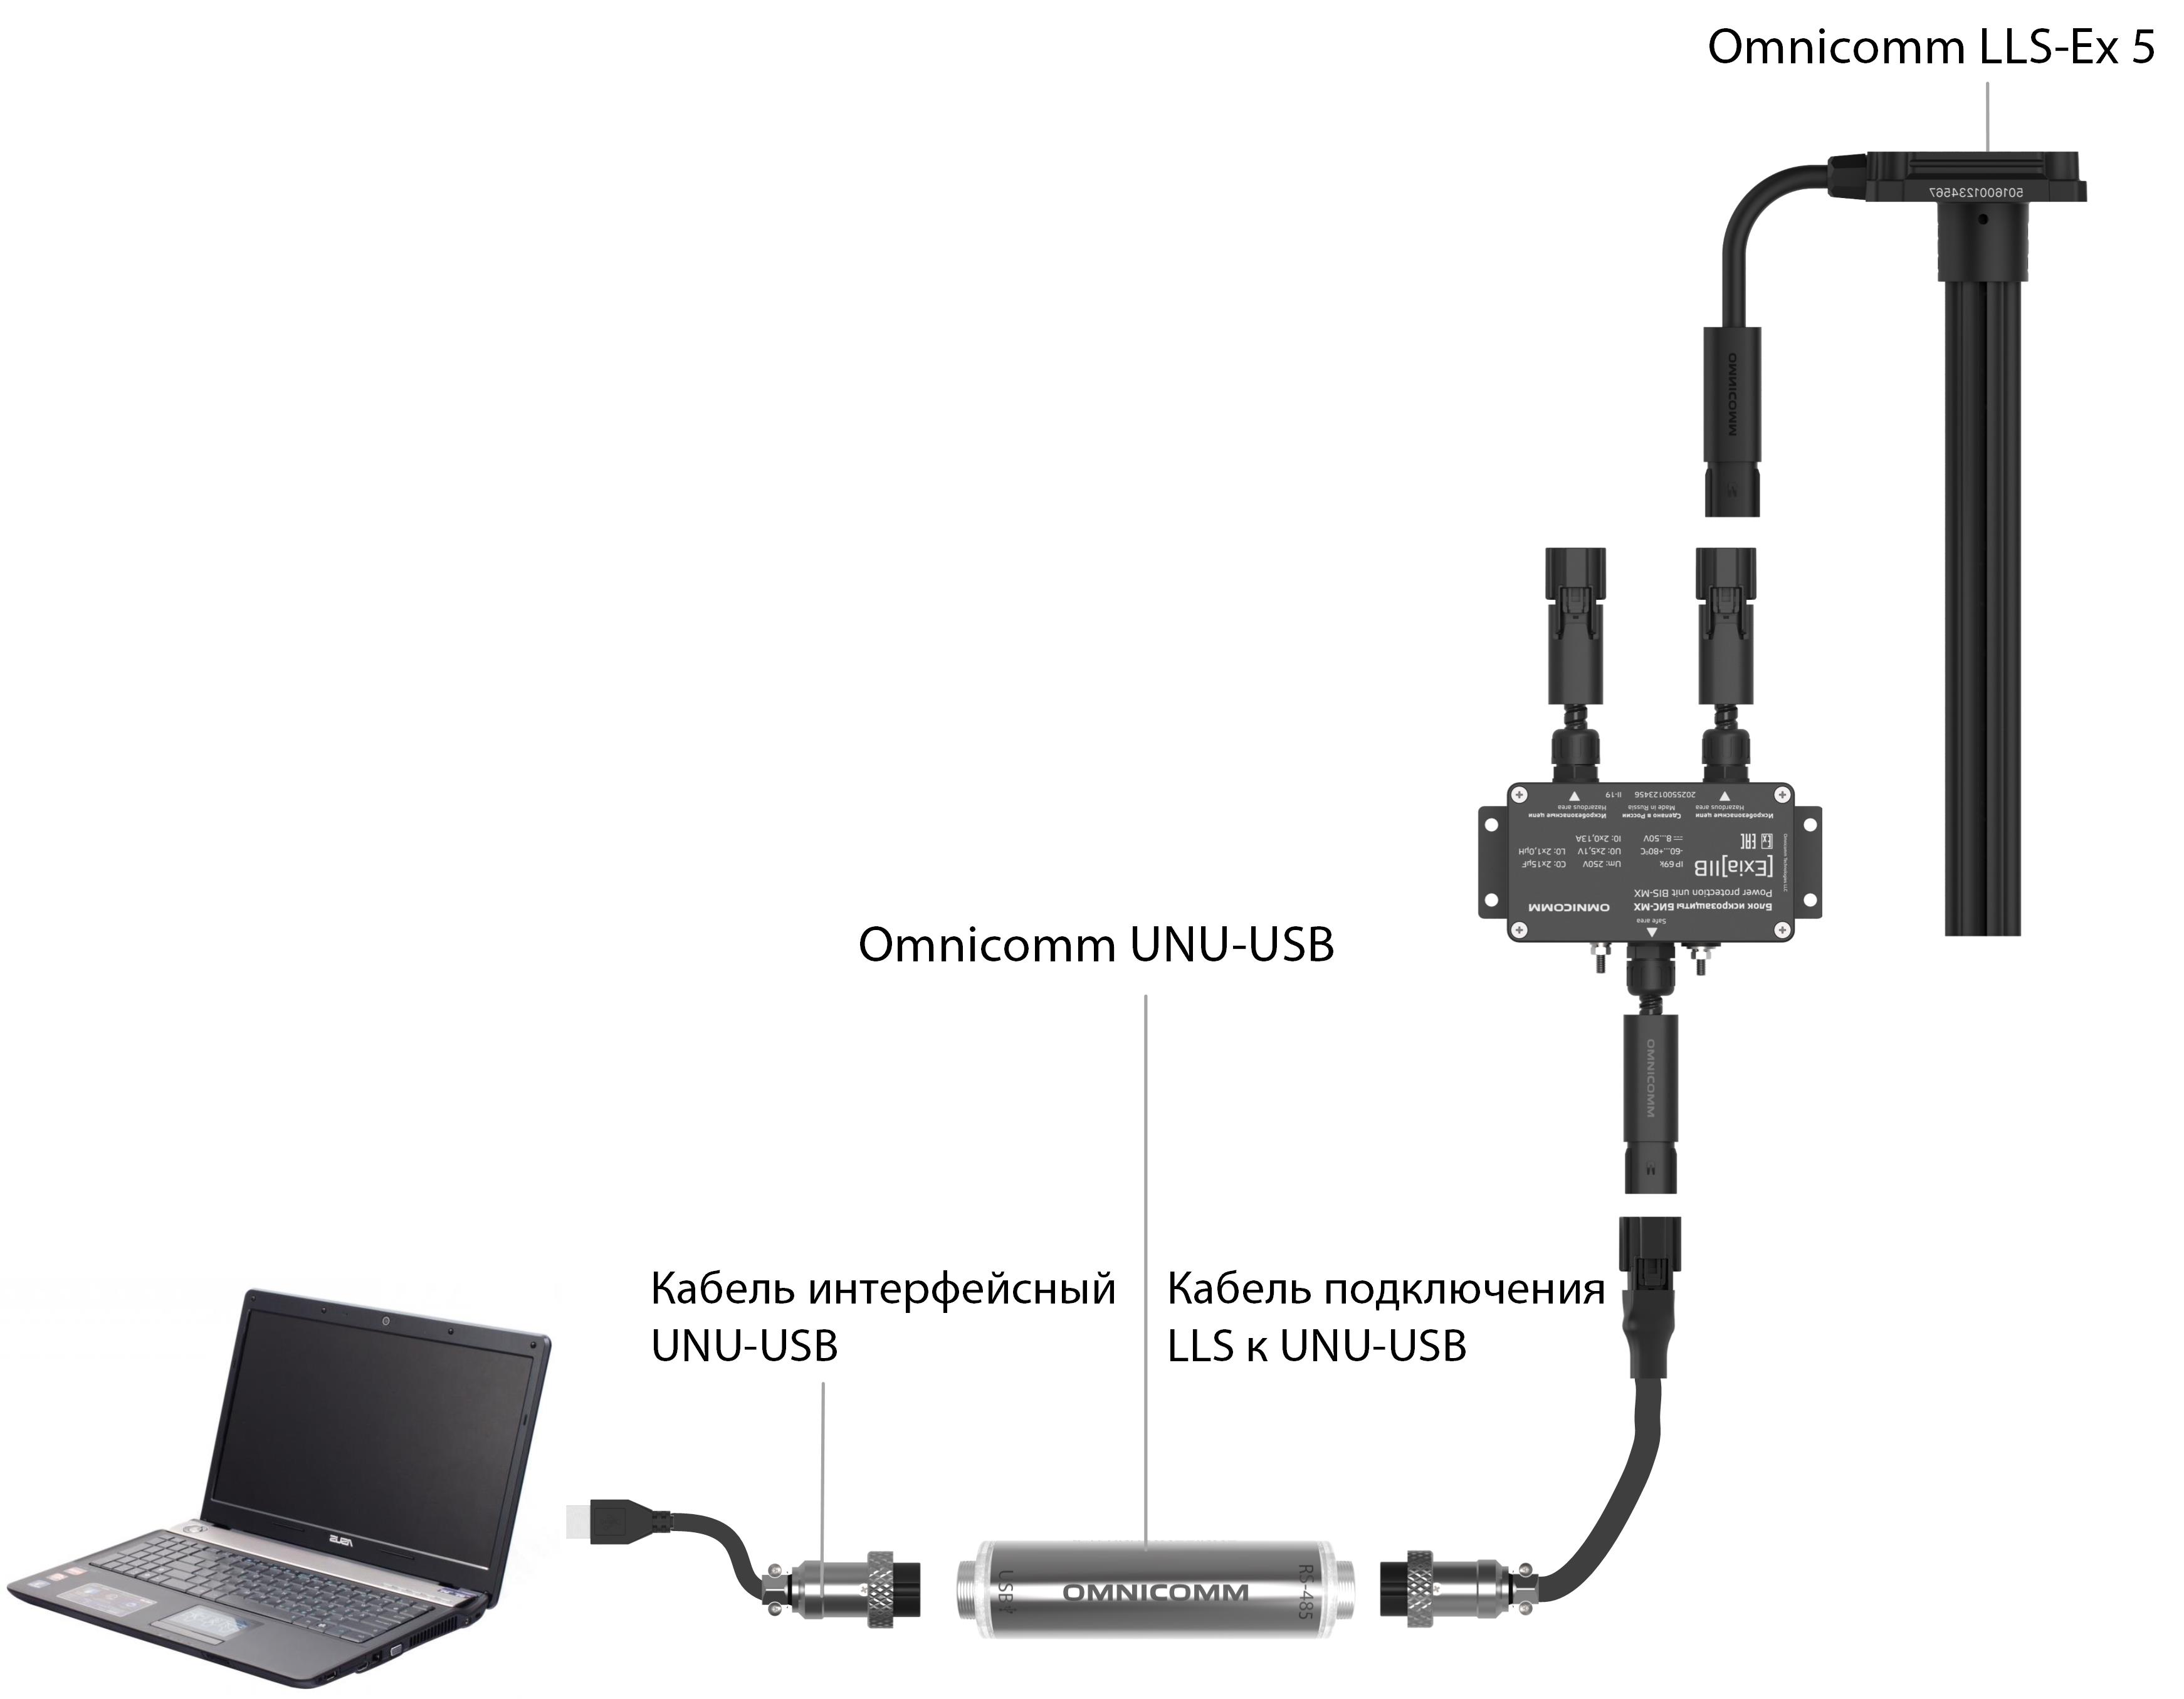 Подключение датчика Omnicomm LLS-Ex 5 к ПК 